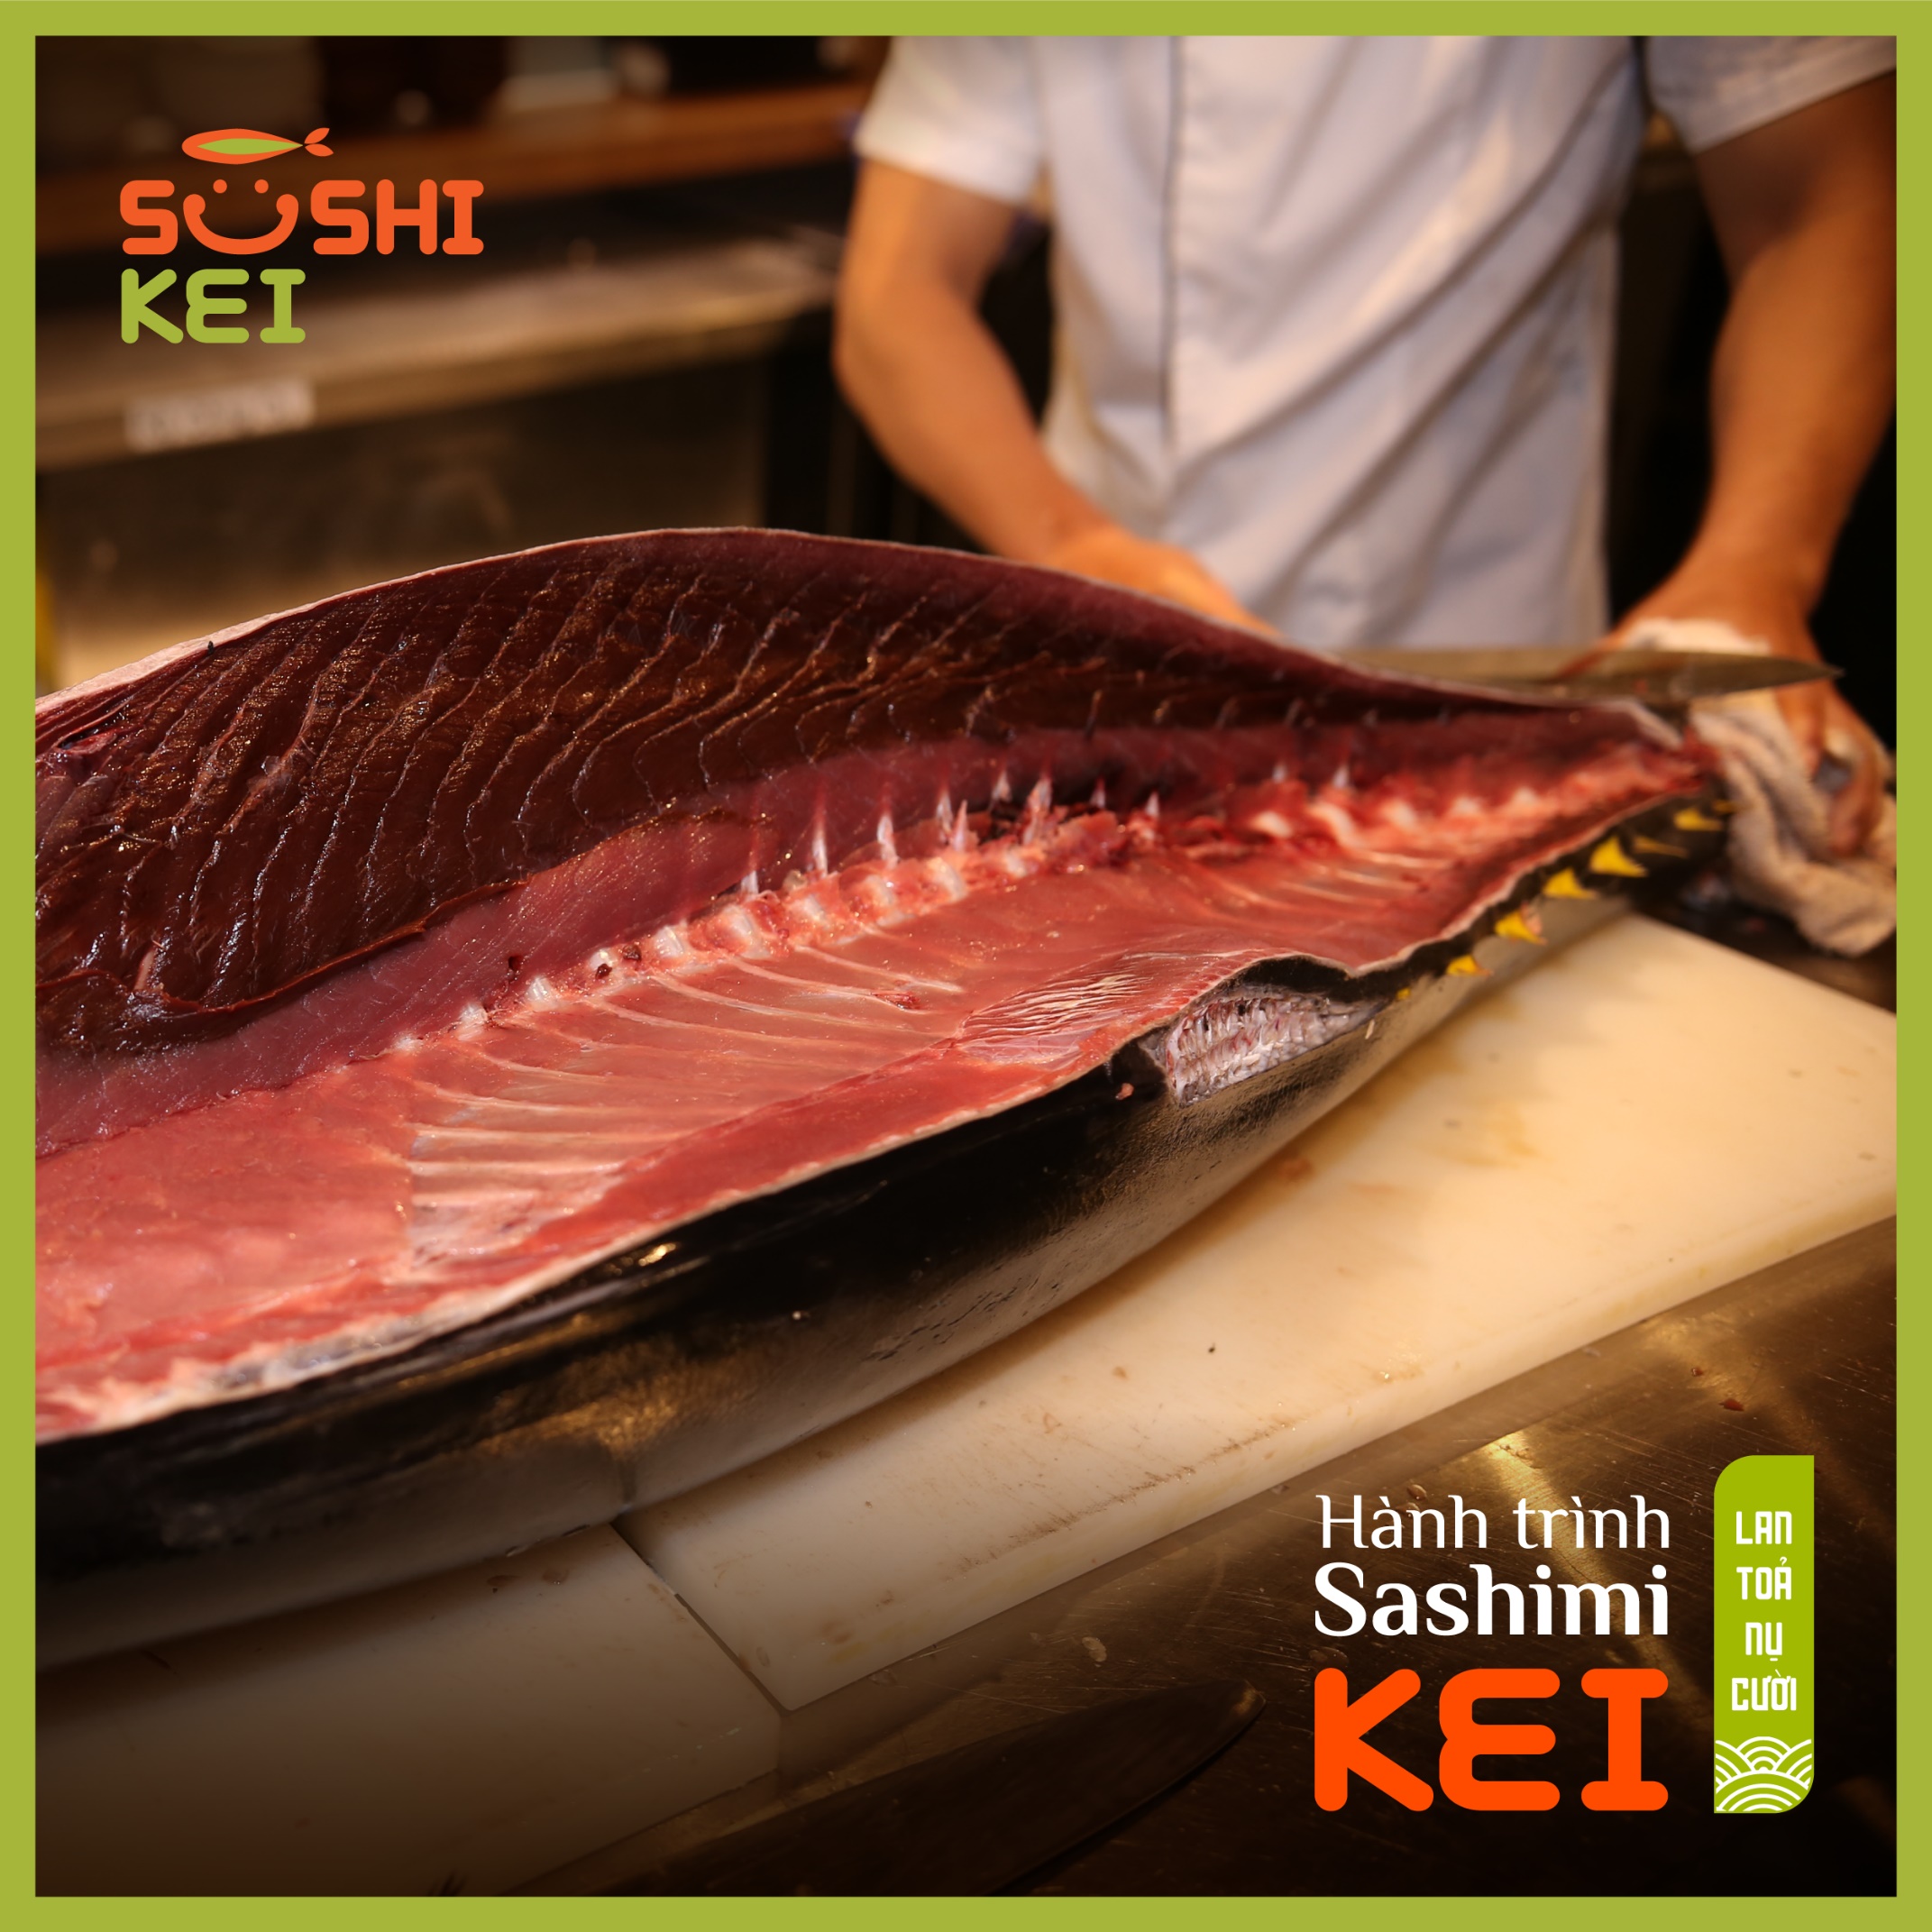 Kinh ngạc với cá ngừ khổng lồ 80kg cùng màn trình diễn chế biến chuyên nghiệp ngay tại nhà hàng Nhật - Sushi Kei - Ảnh 2.